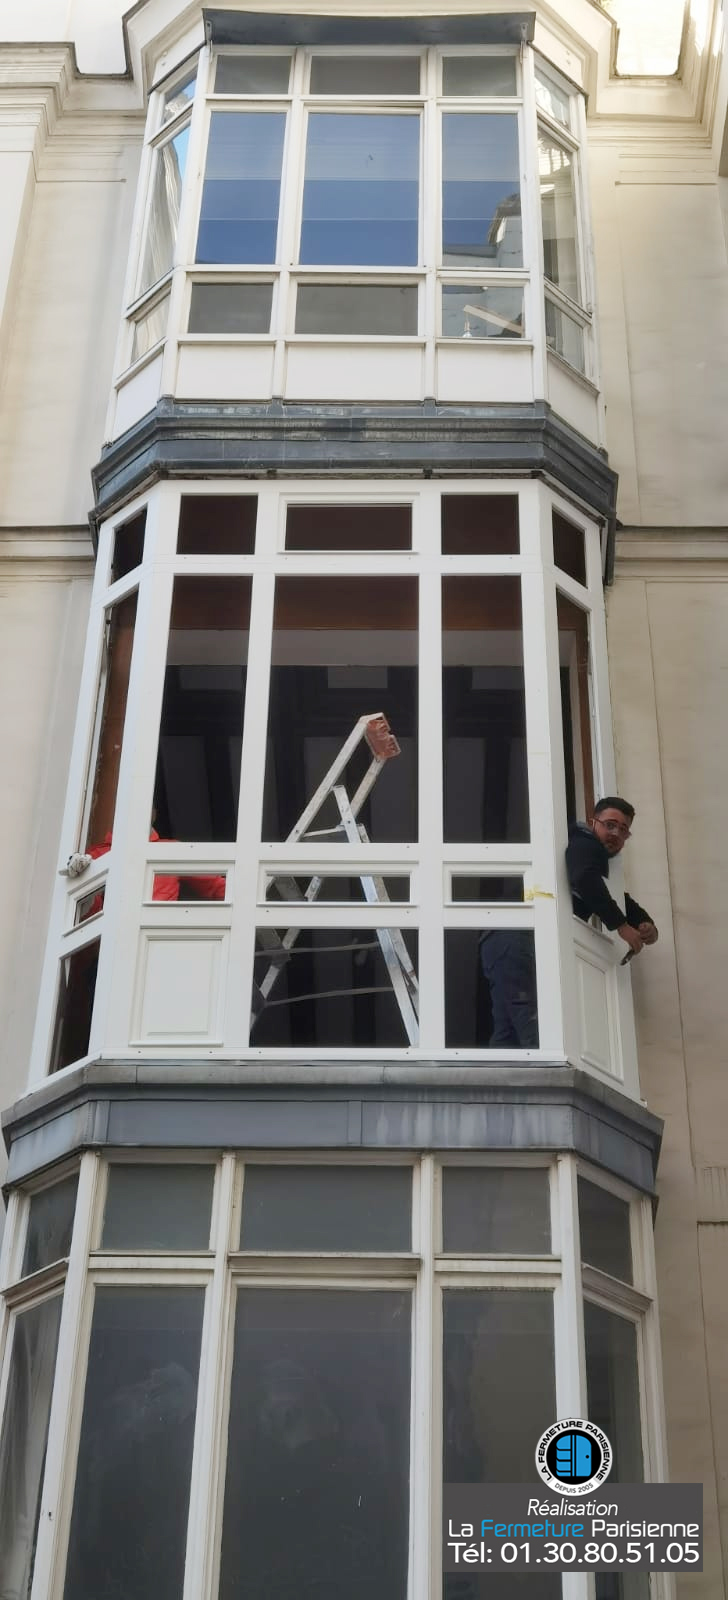 Fenêtres à recouvrement en bois - Paris - La Fermeture Parisienne